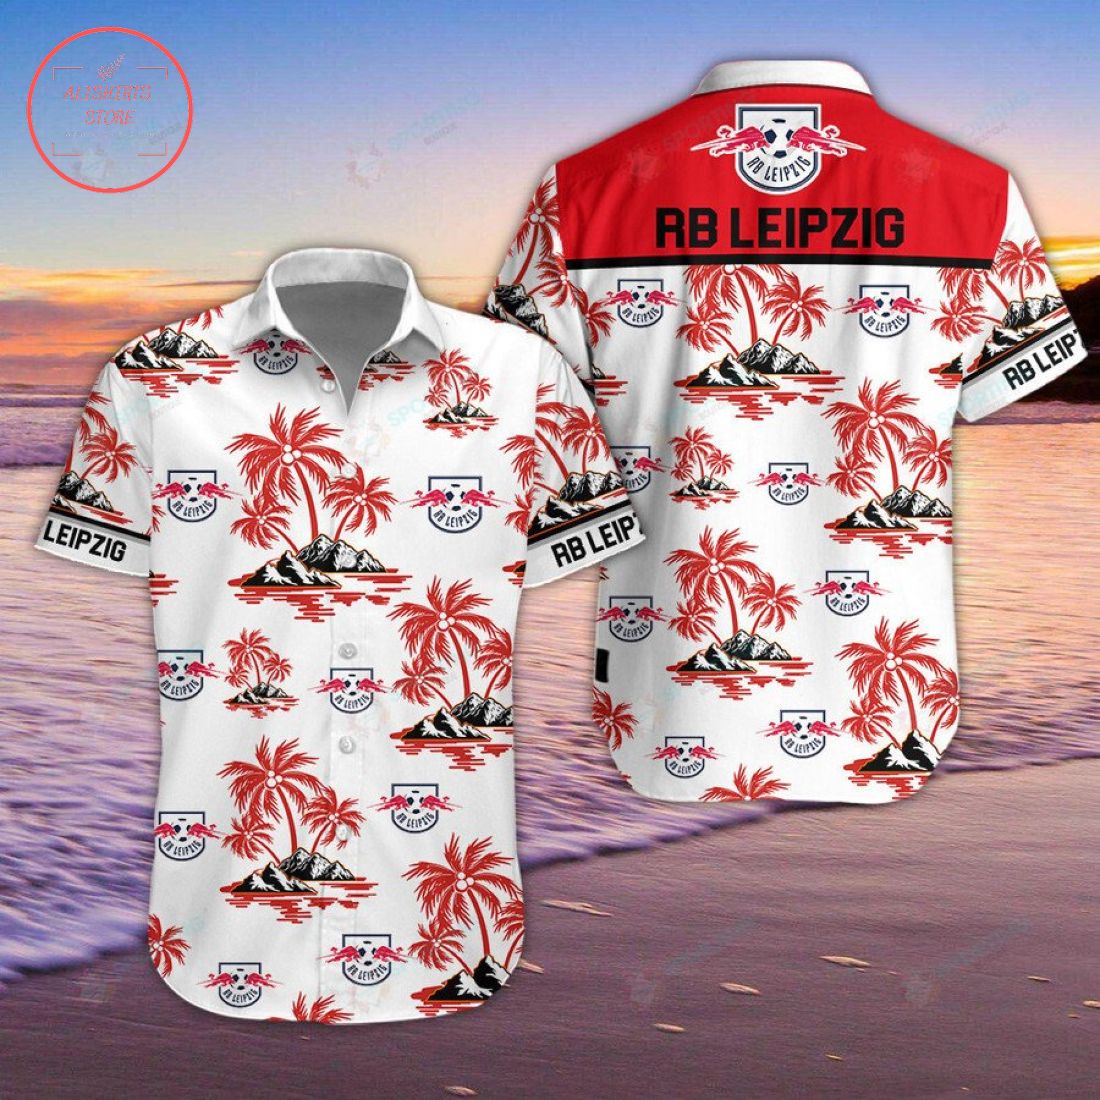 RB Leipzig Hawaiian Shirt and Shorts